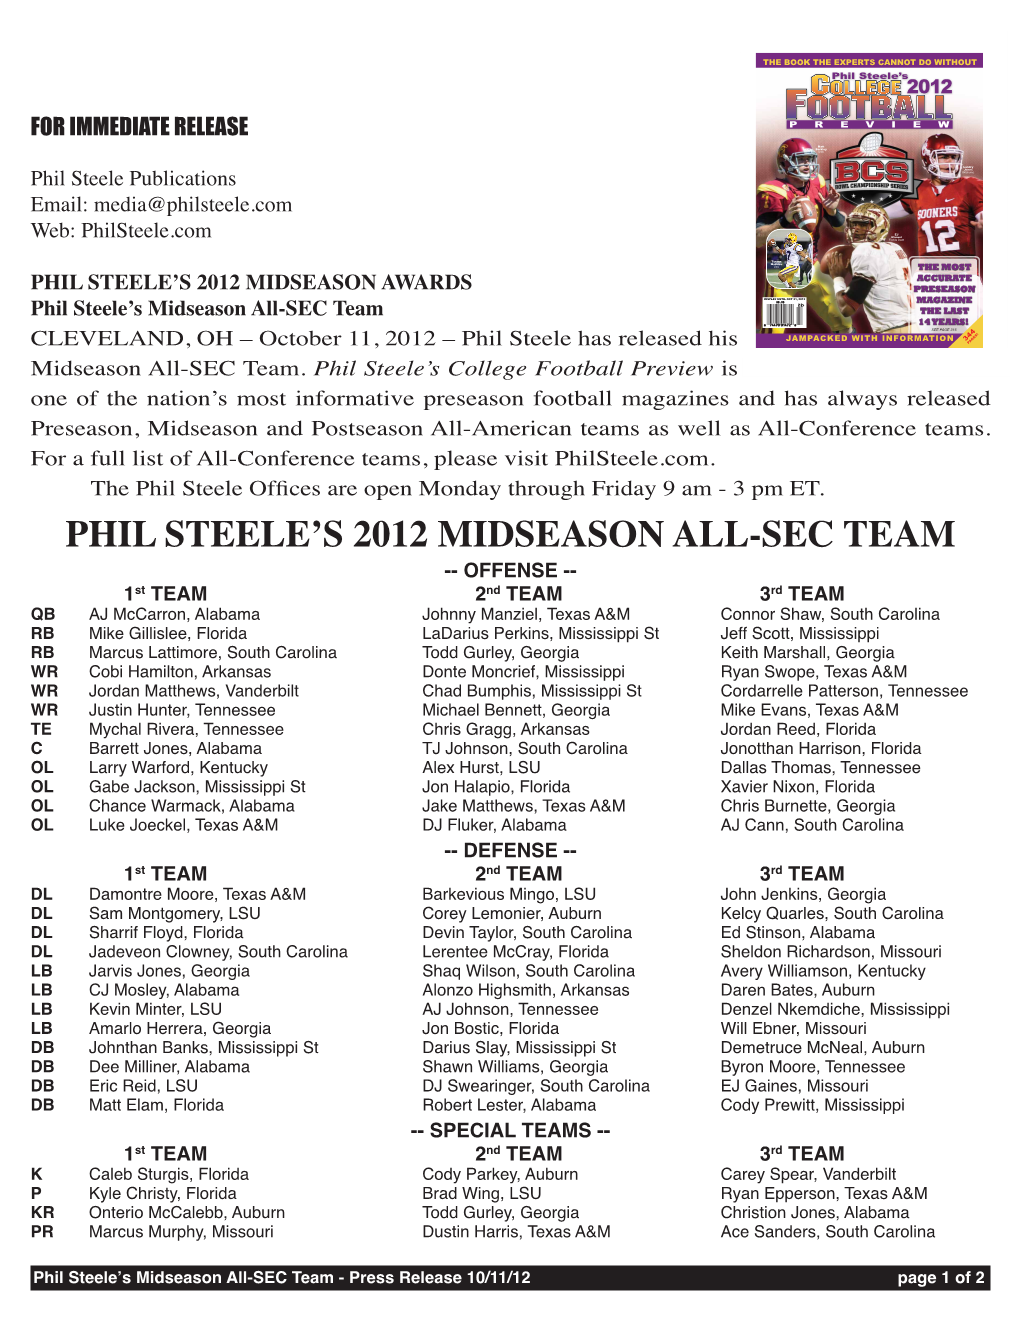 Phil Steele's 2012 Midseason All-Sec Team